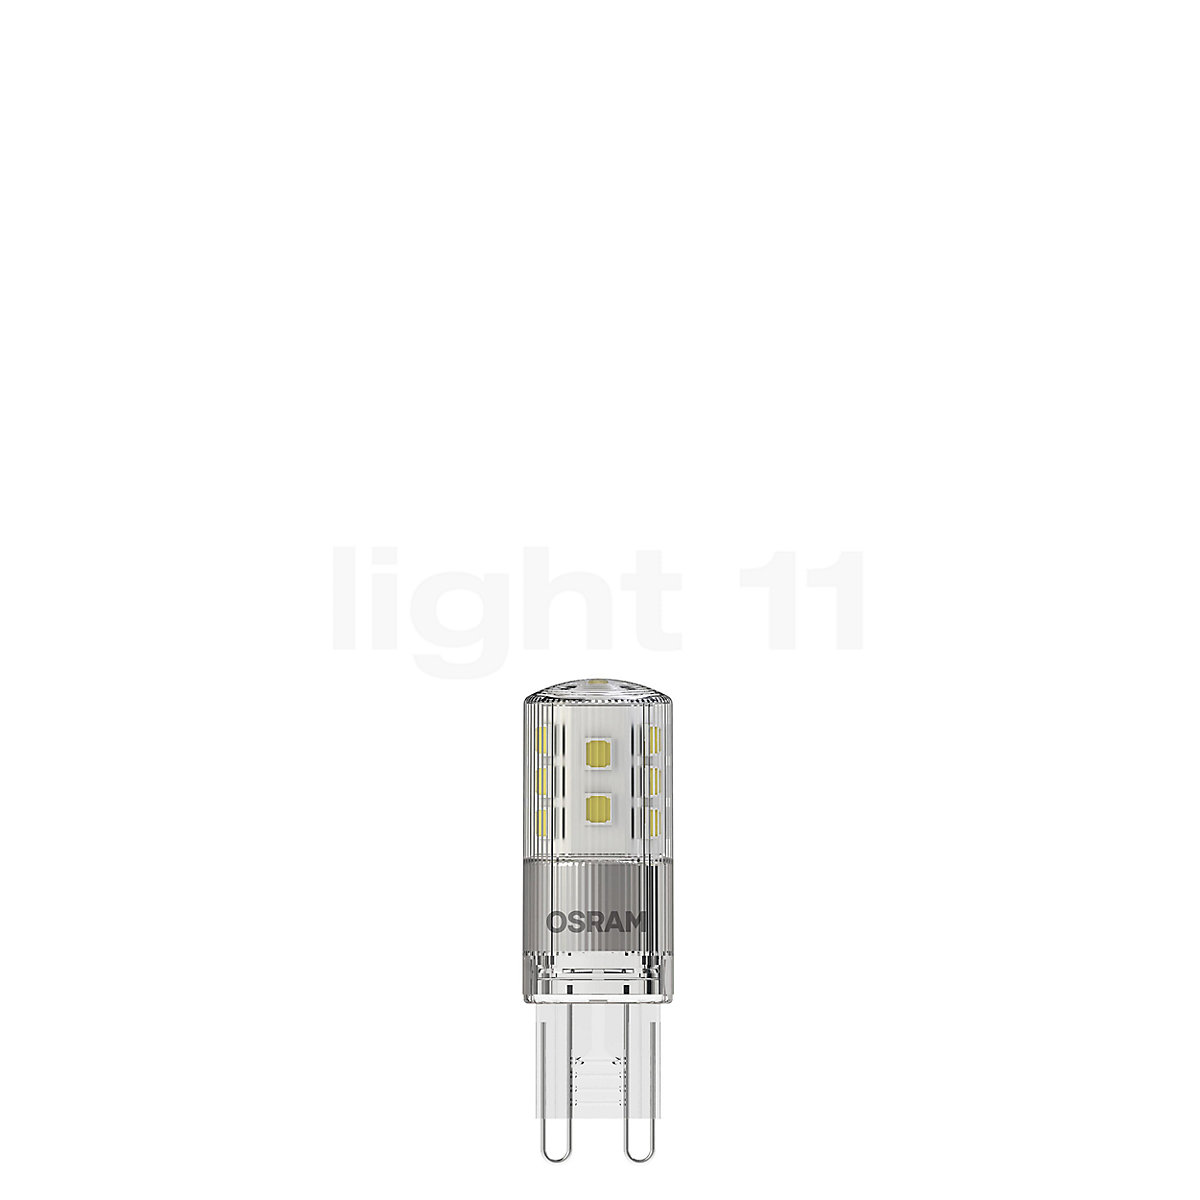 optellen blijven Ideaal Osram T20-dim 3W/c 827, G9 LED kopen bij light11.nl